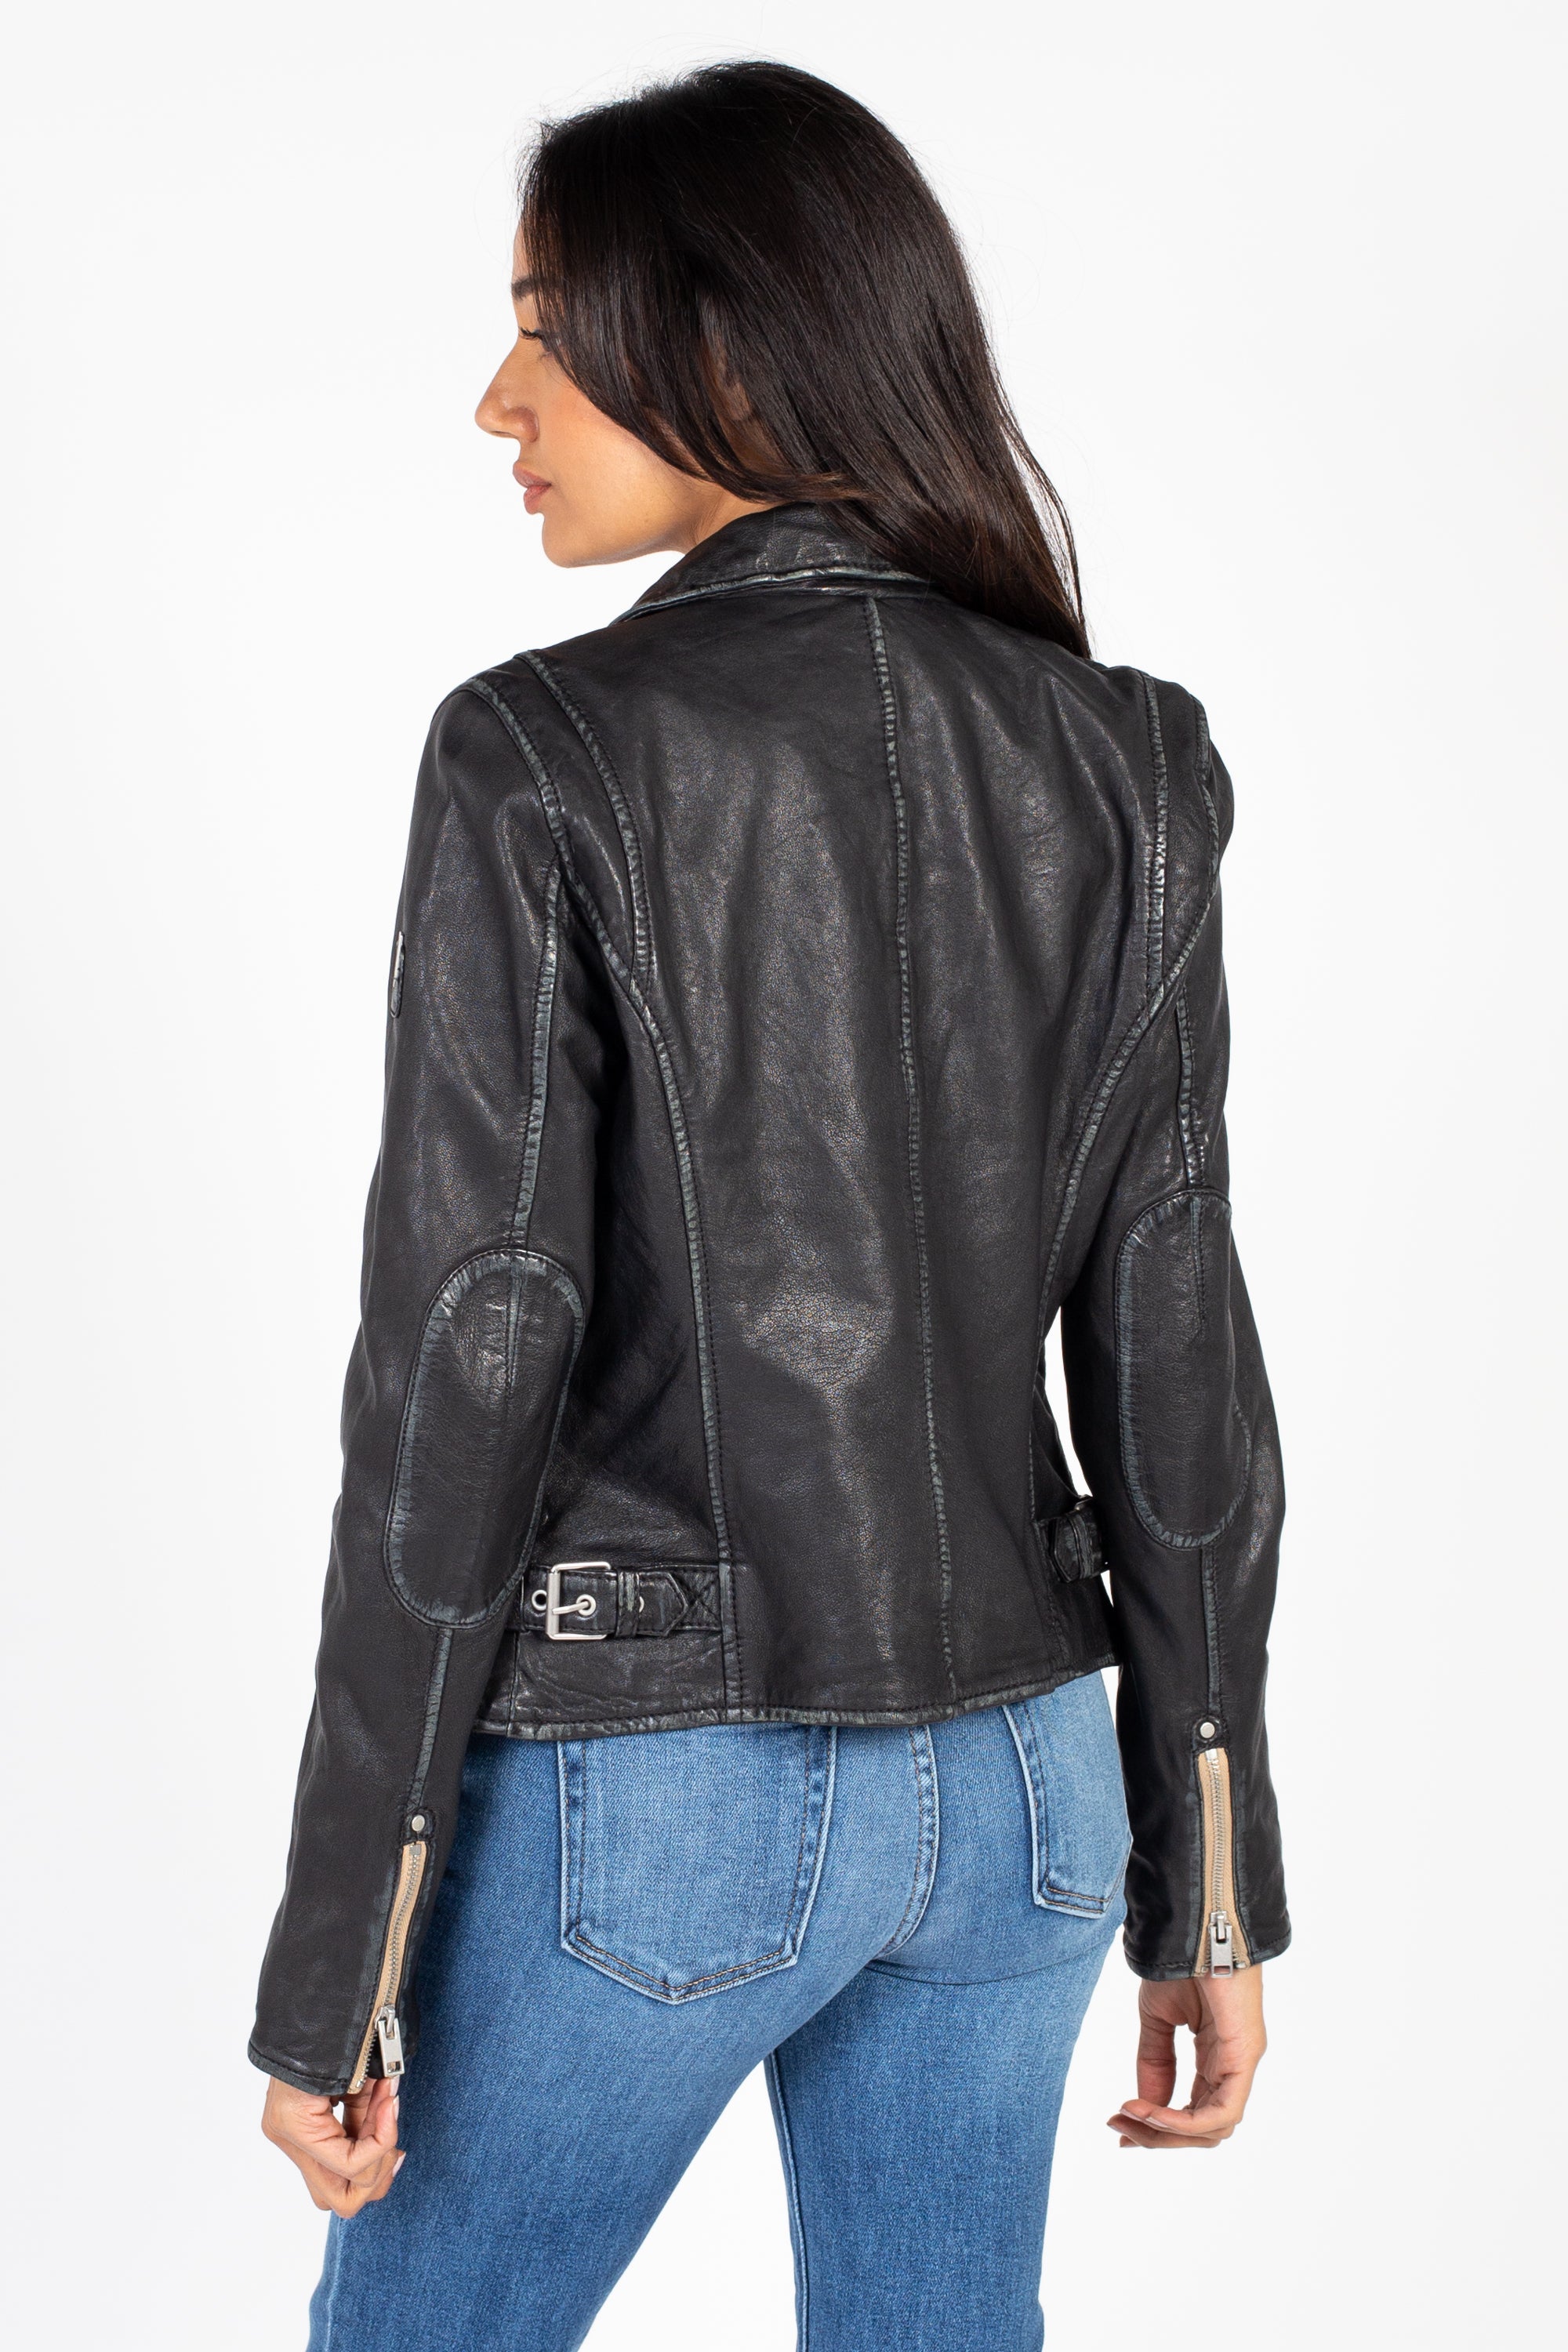 Mauritius Sofia Leather Moto Jacket